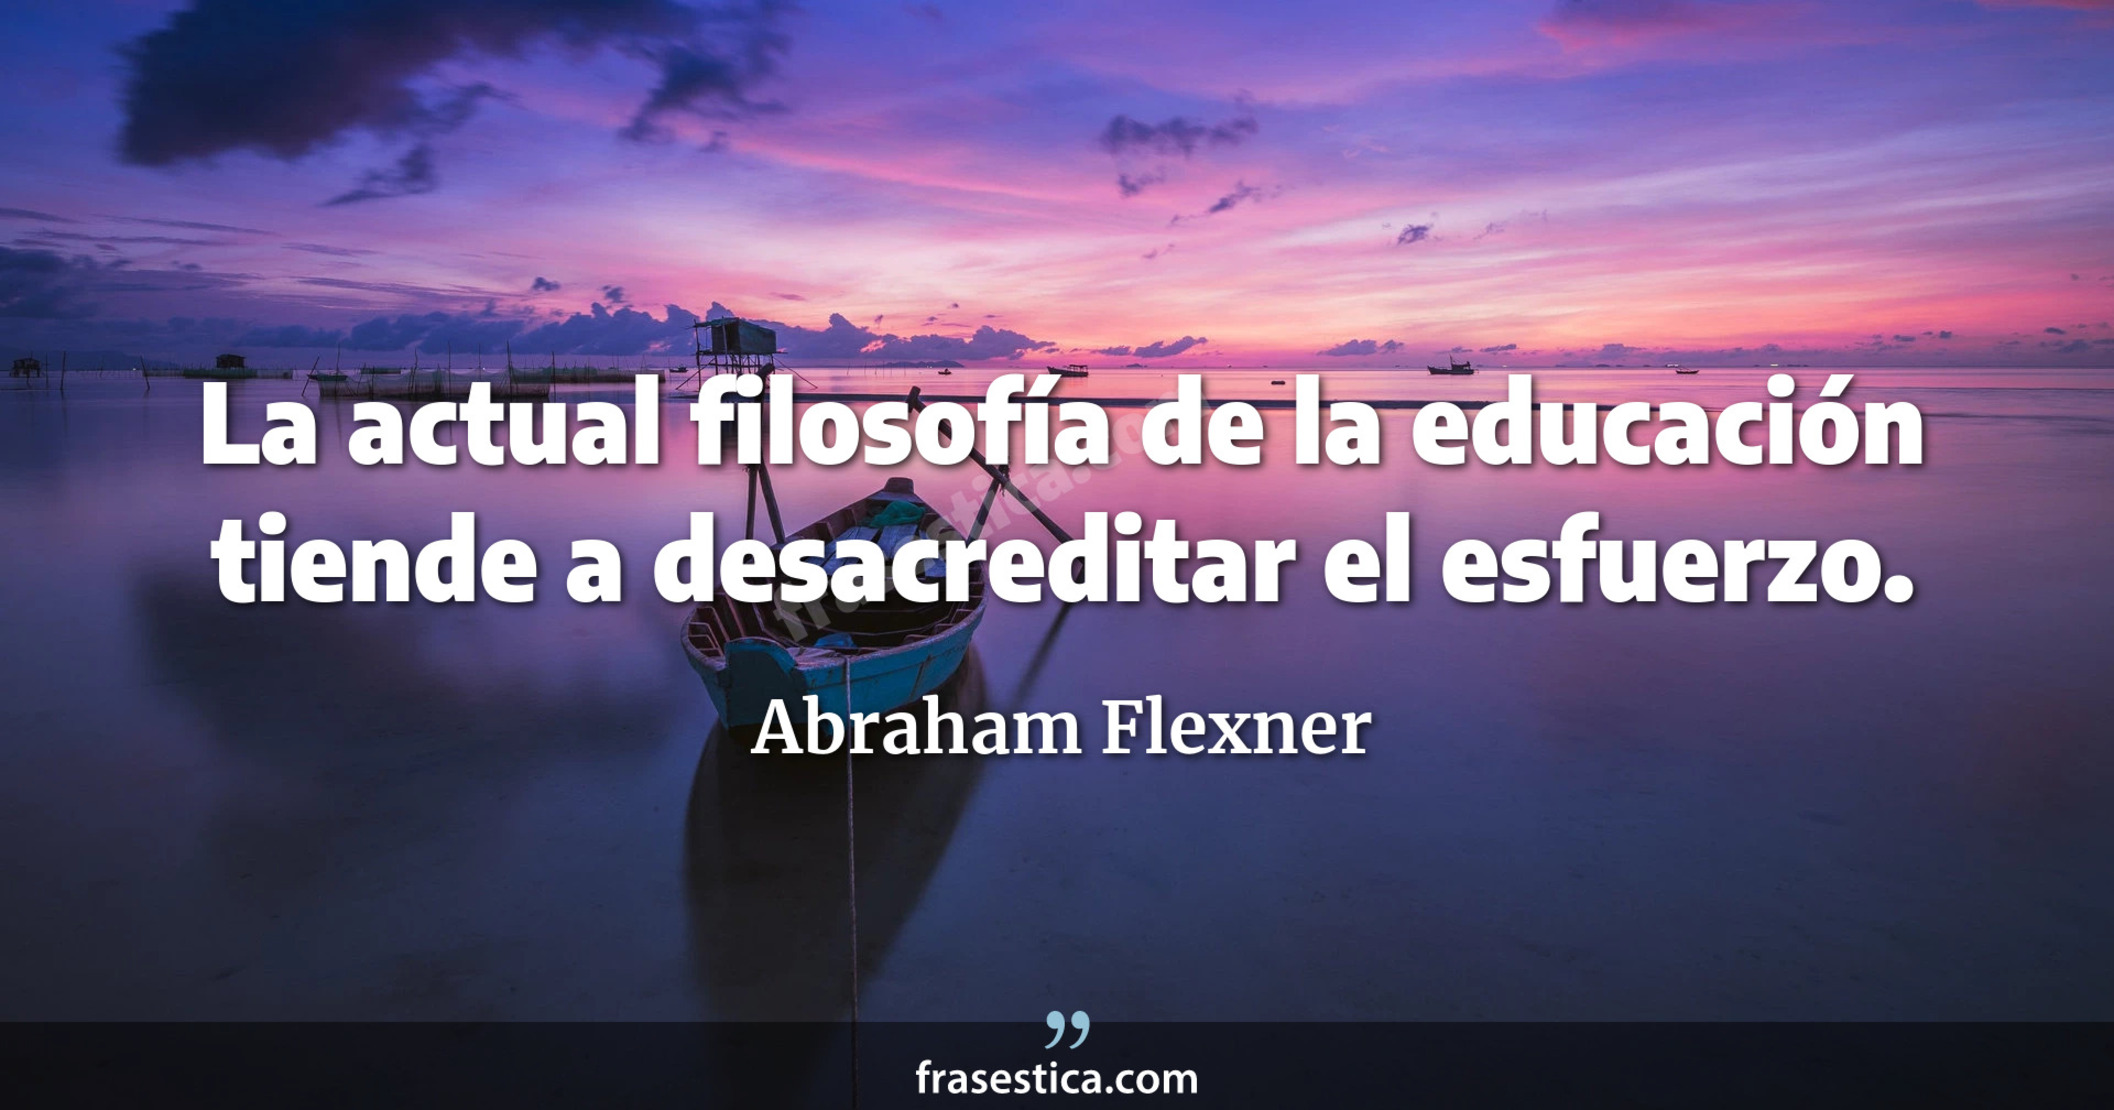 La actual filosofía de la educación tiende a desacreditar el esfuerzo. - Abraham Flexner